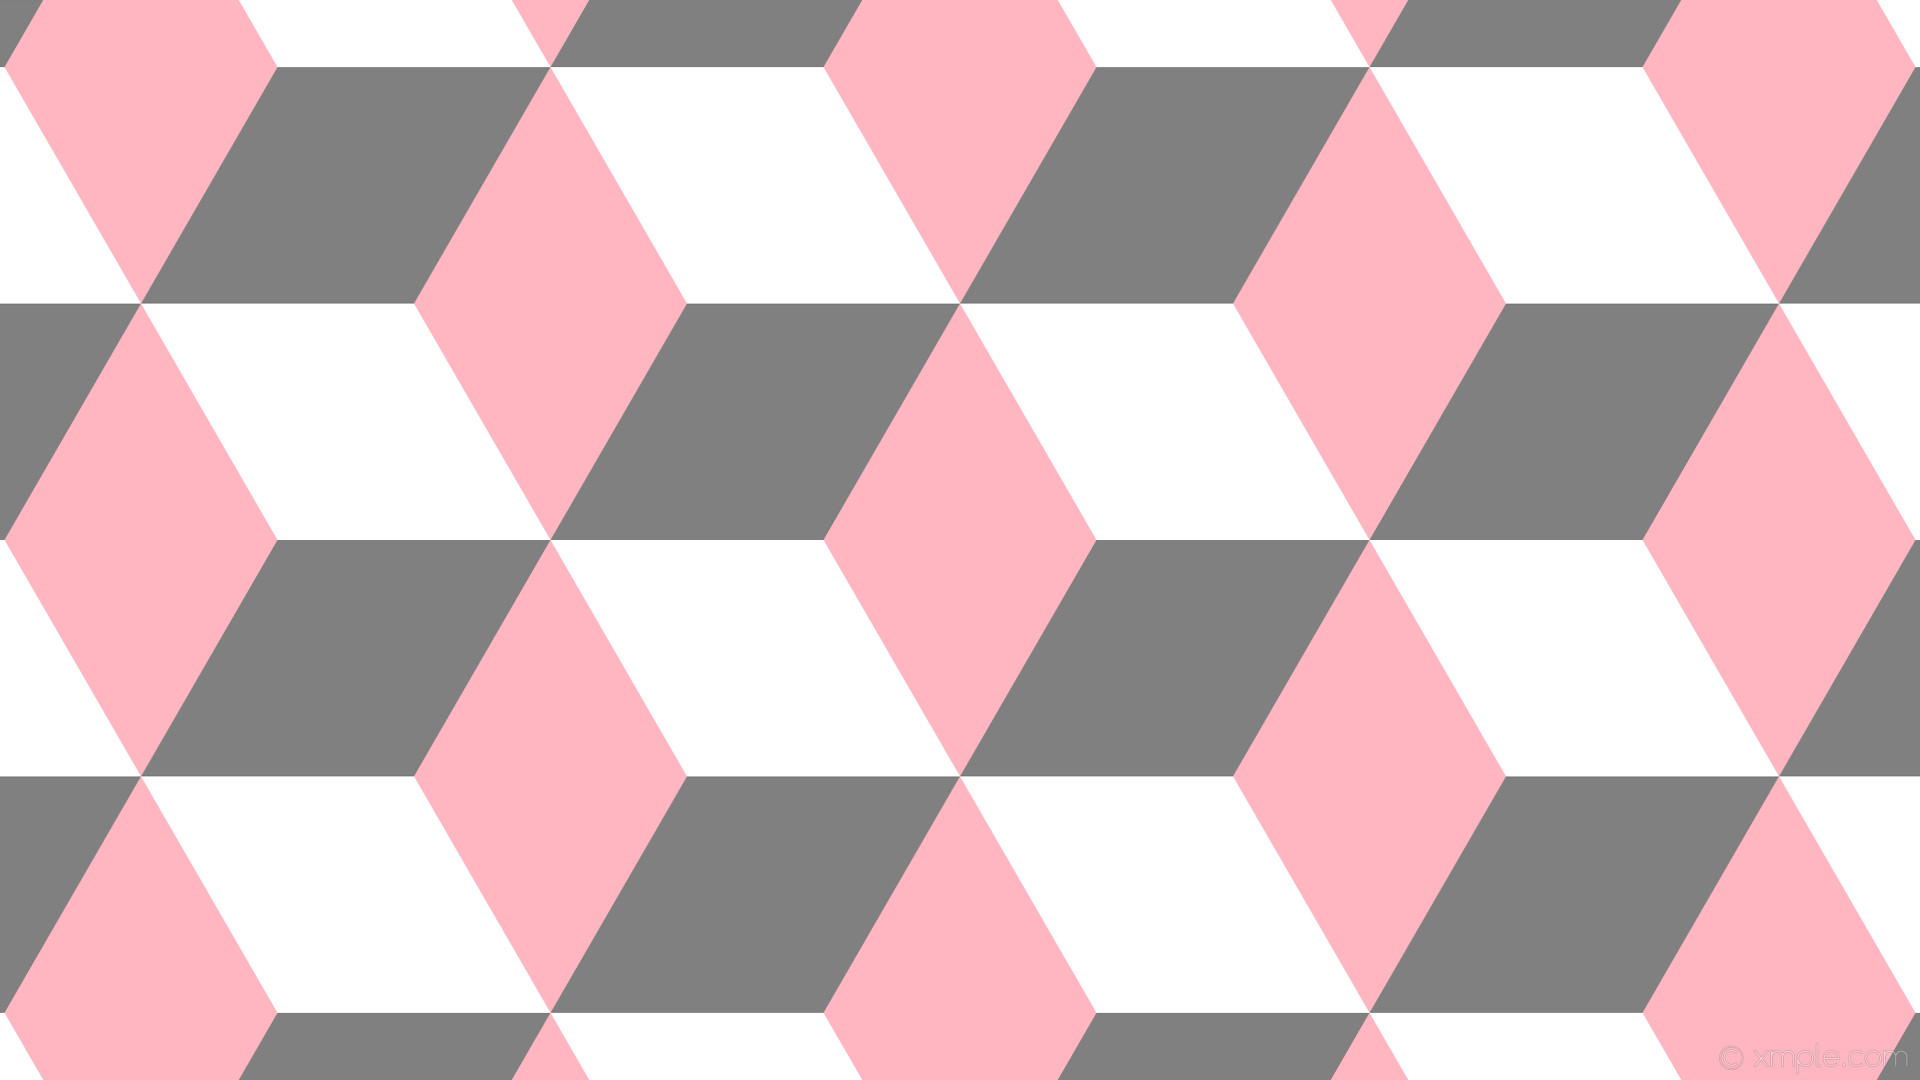 1920x1080 wallpaper 3d cubes white grey pink light pink gray #ffb6c1 #808080 #ffffff  90